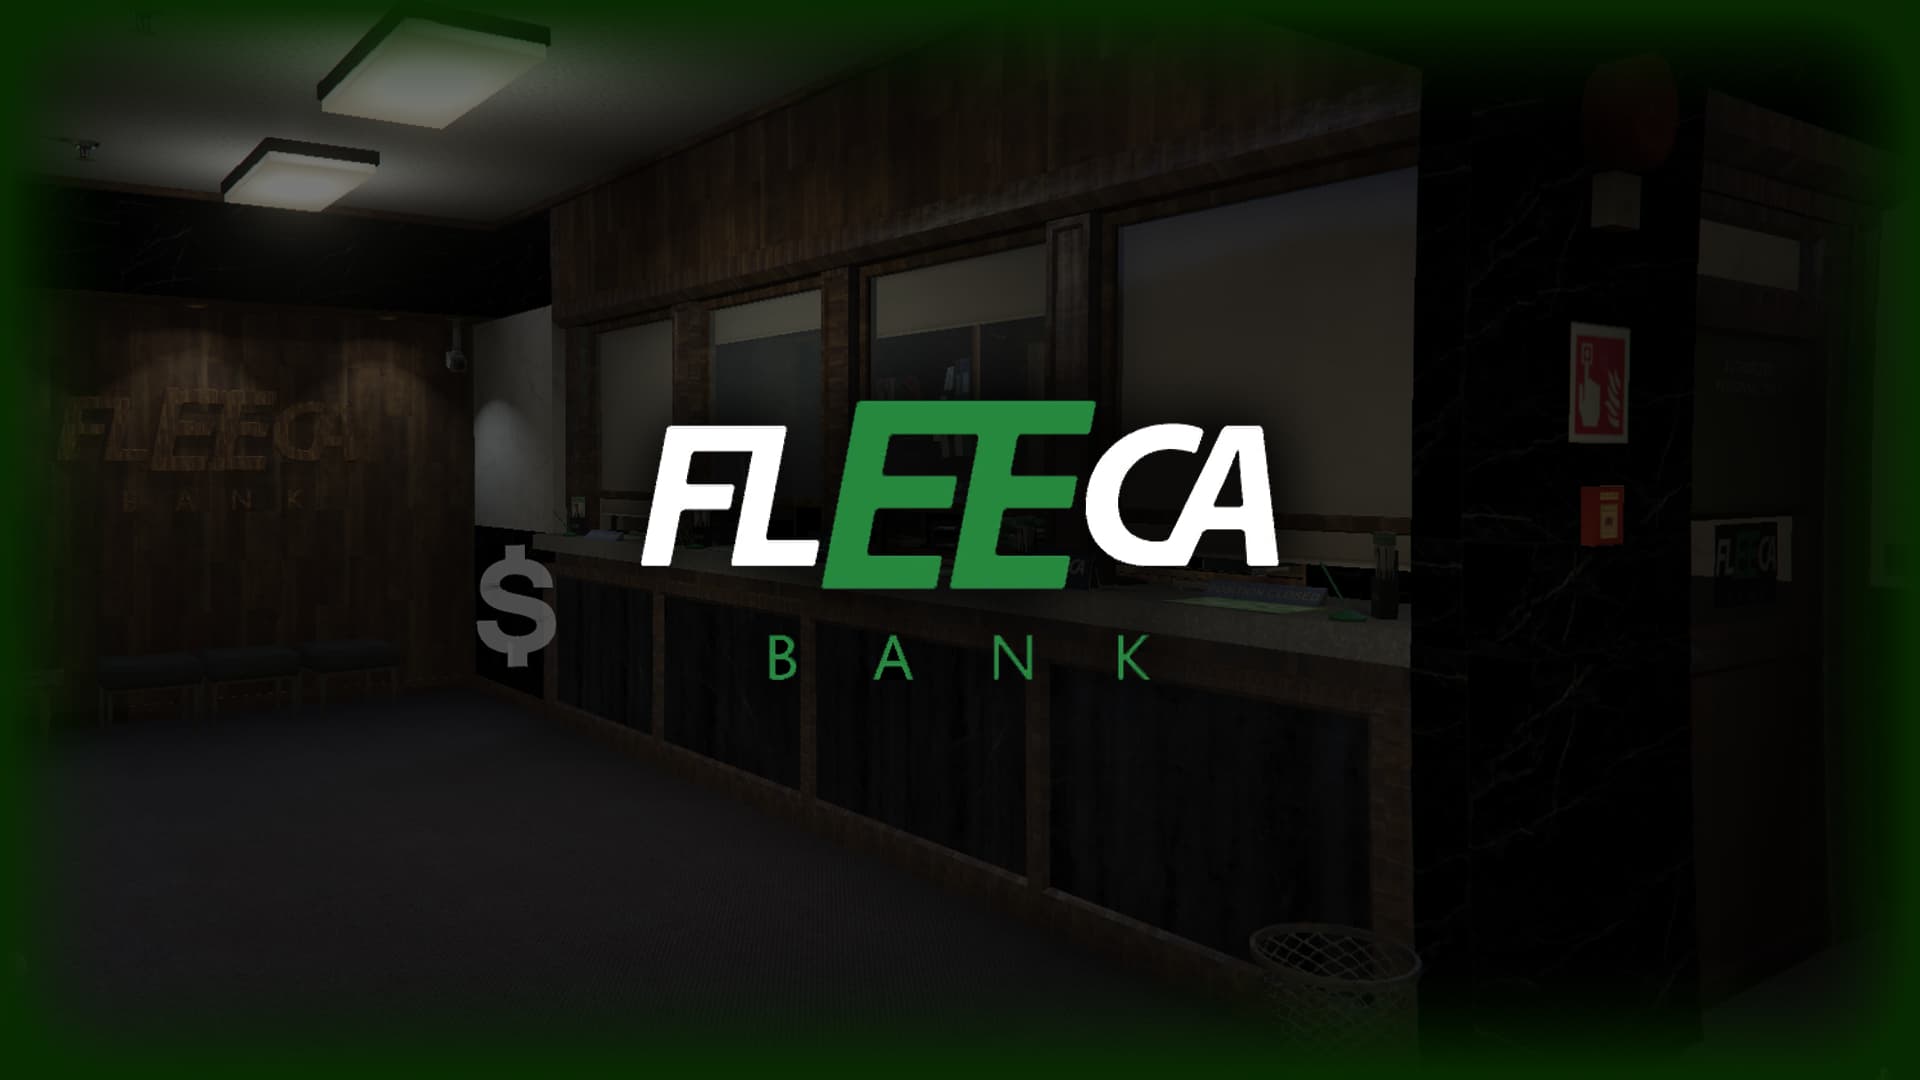 Fleeca bank in gta 5 фото 43